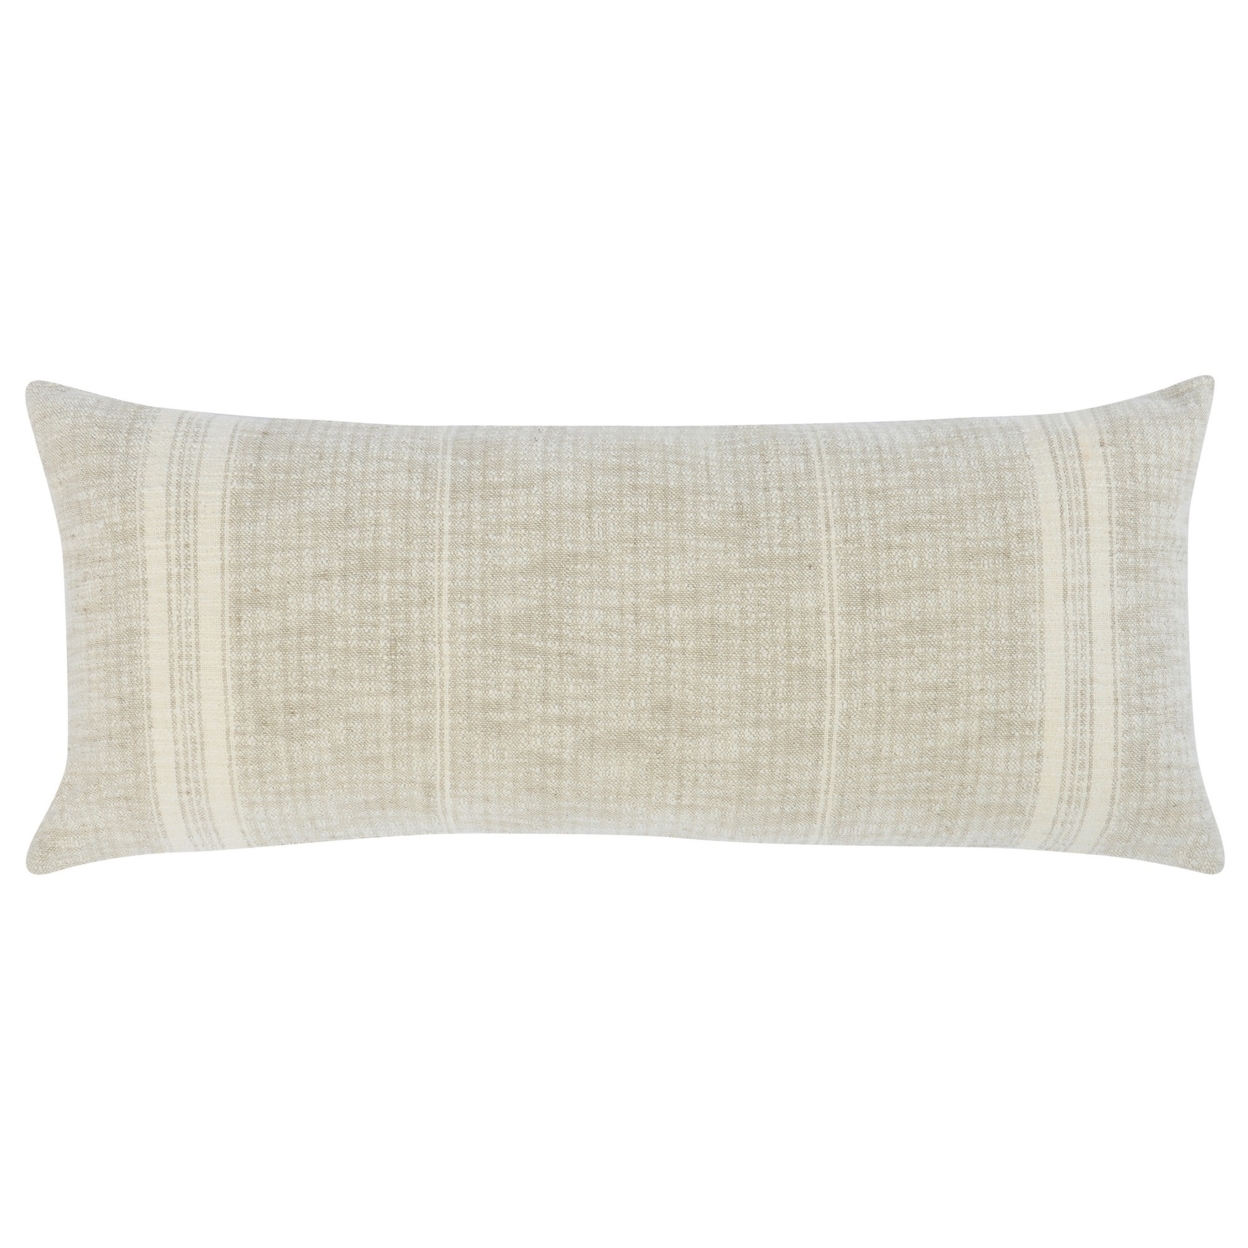 Tia 16 X 36 Lumbar Accent Throw Pillow, Woven Striped, Ivory Linen Blend- Saltoro Sherpi